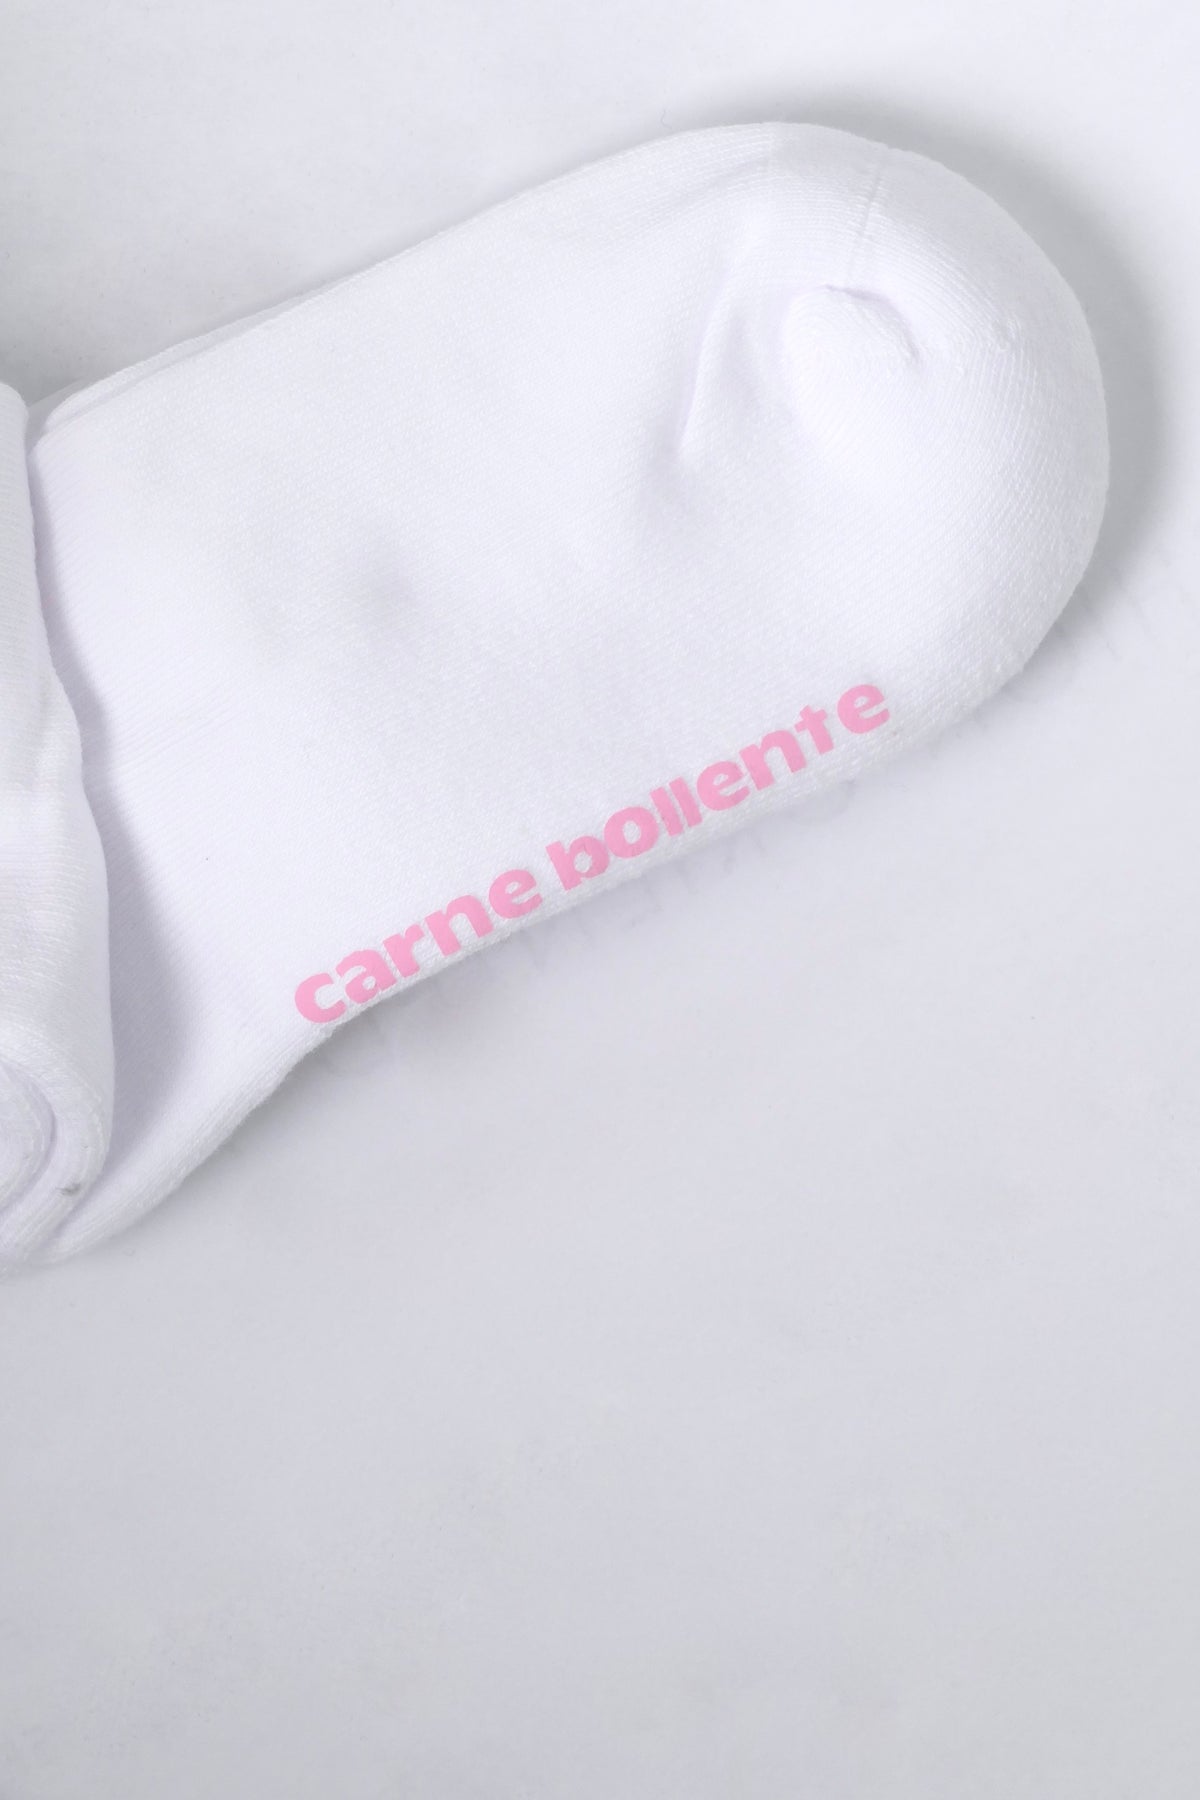 Carne Bollente Milk Snake Socks - White